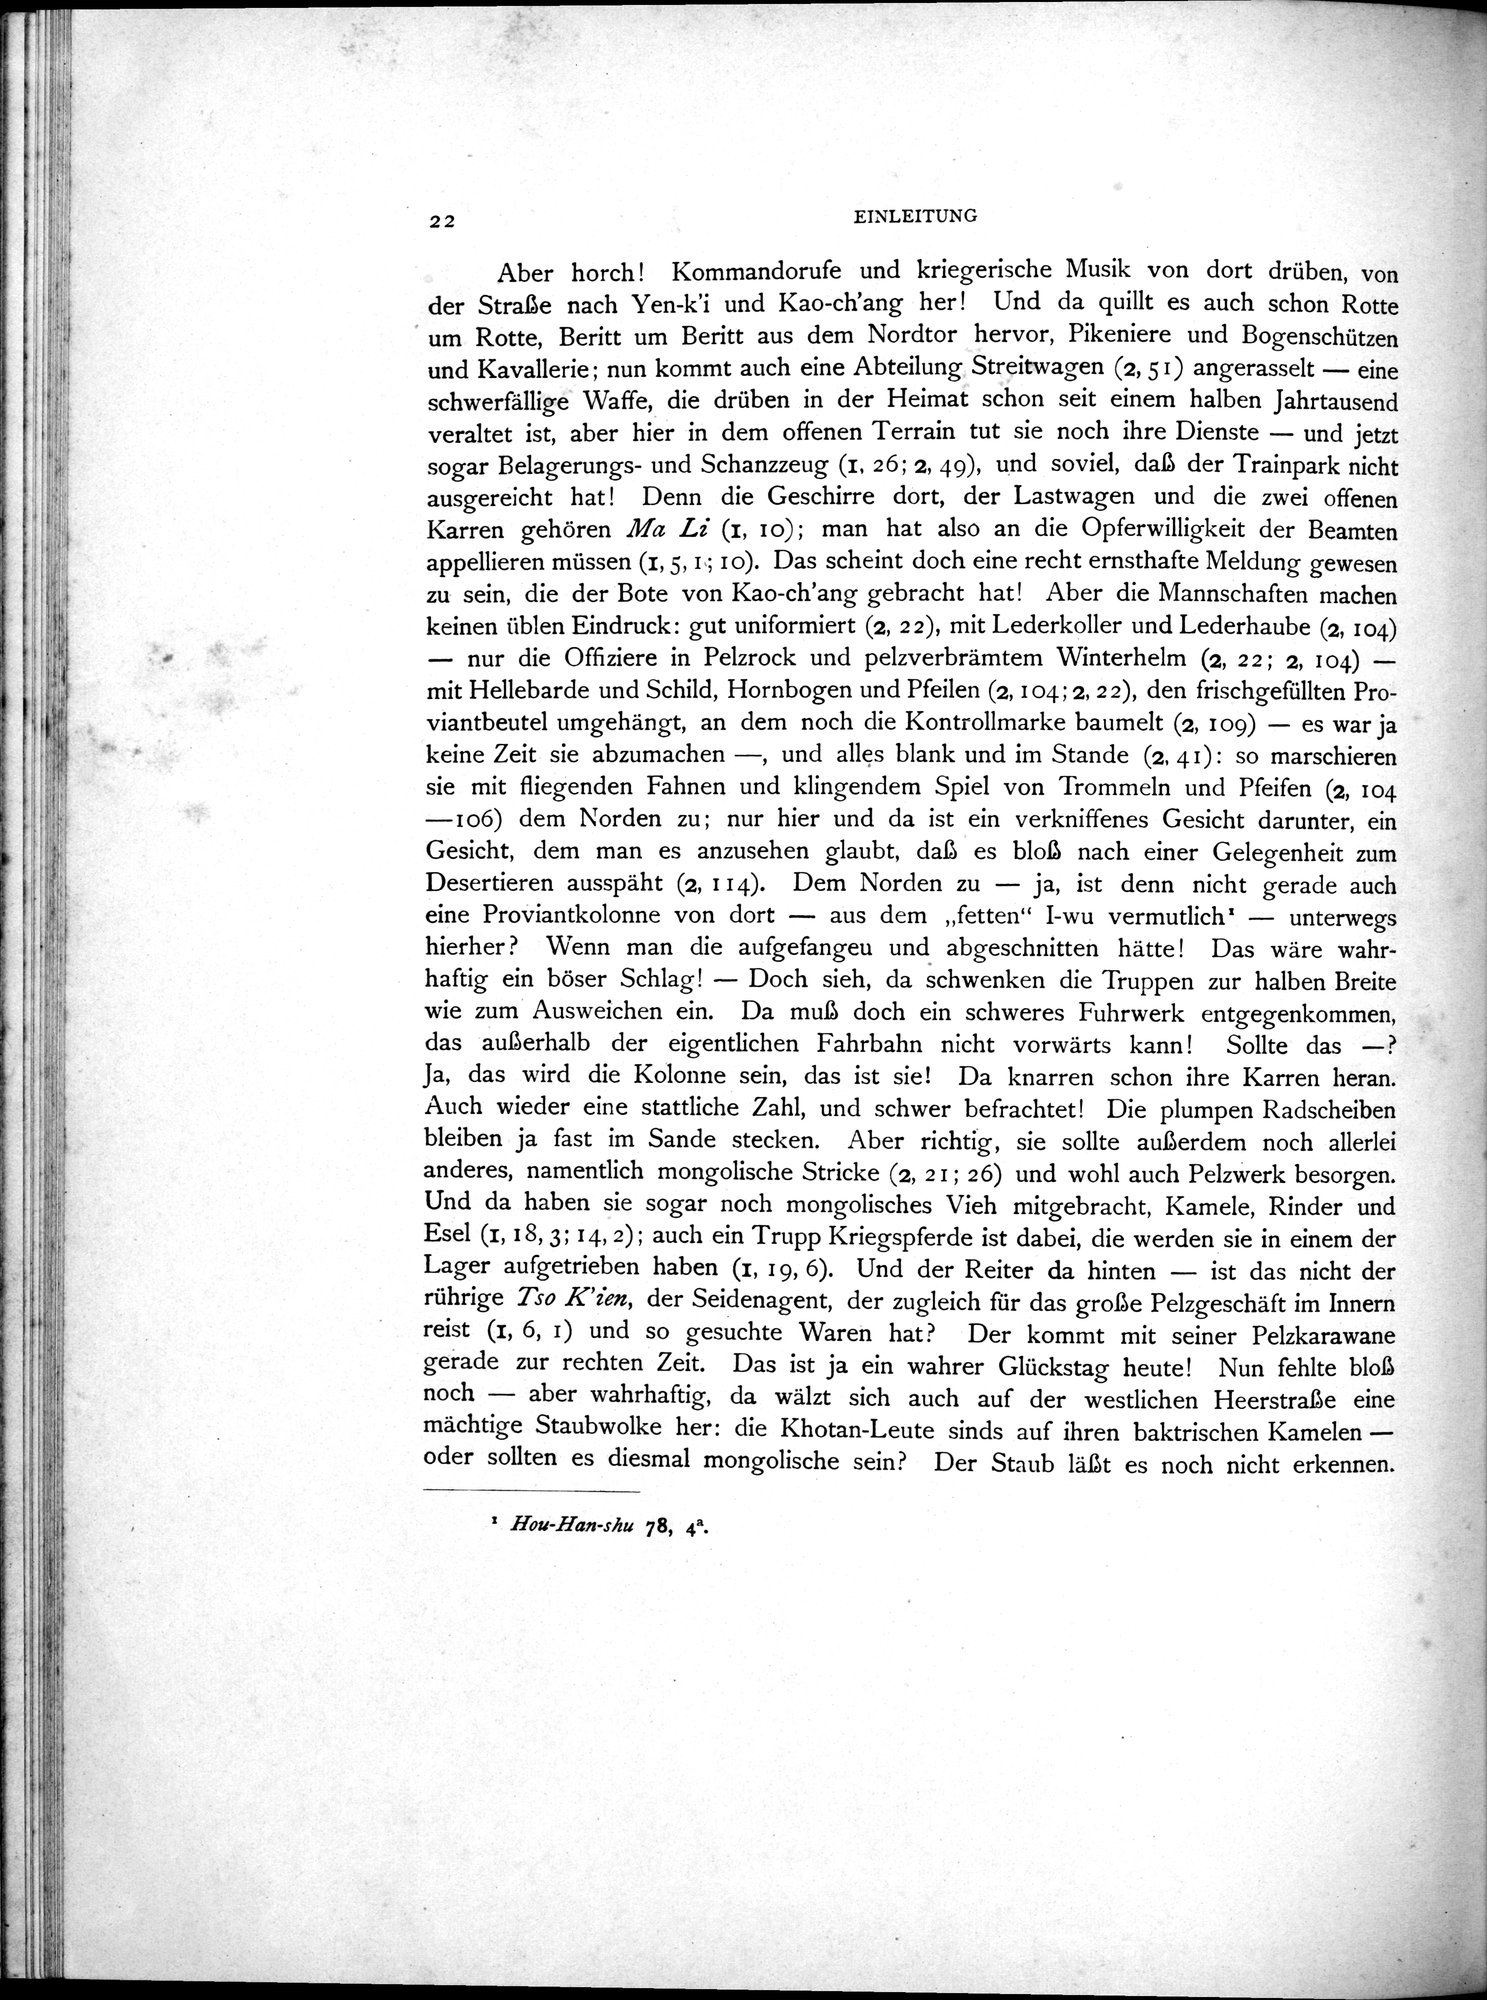 Die Chinesischen Handschriften- und sonstigen Kleinfunde Sven Hedins in Lou-lan : vol.1 / Page 46 (Grayscale High Resolution Image)